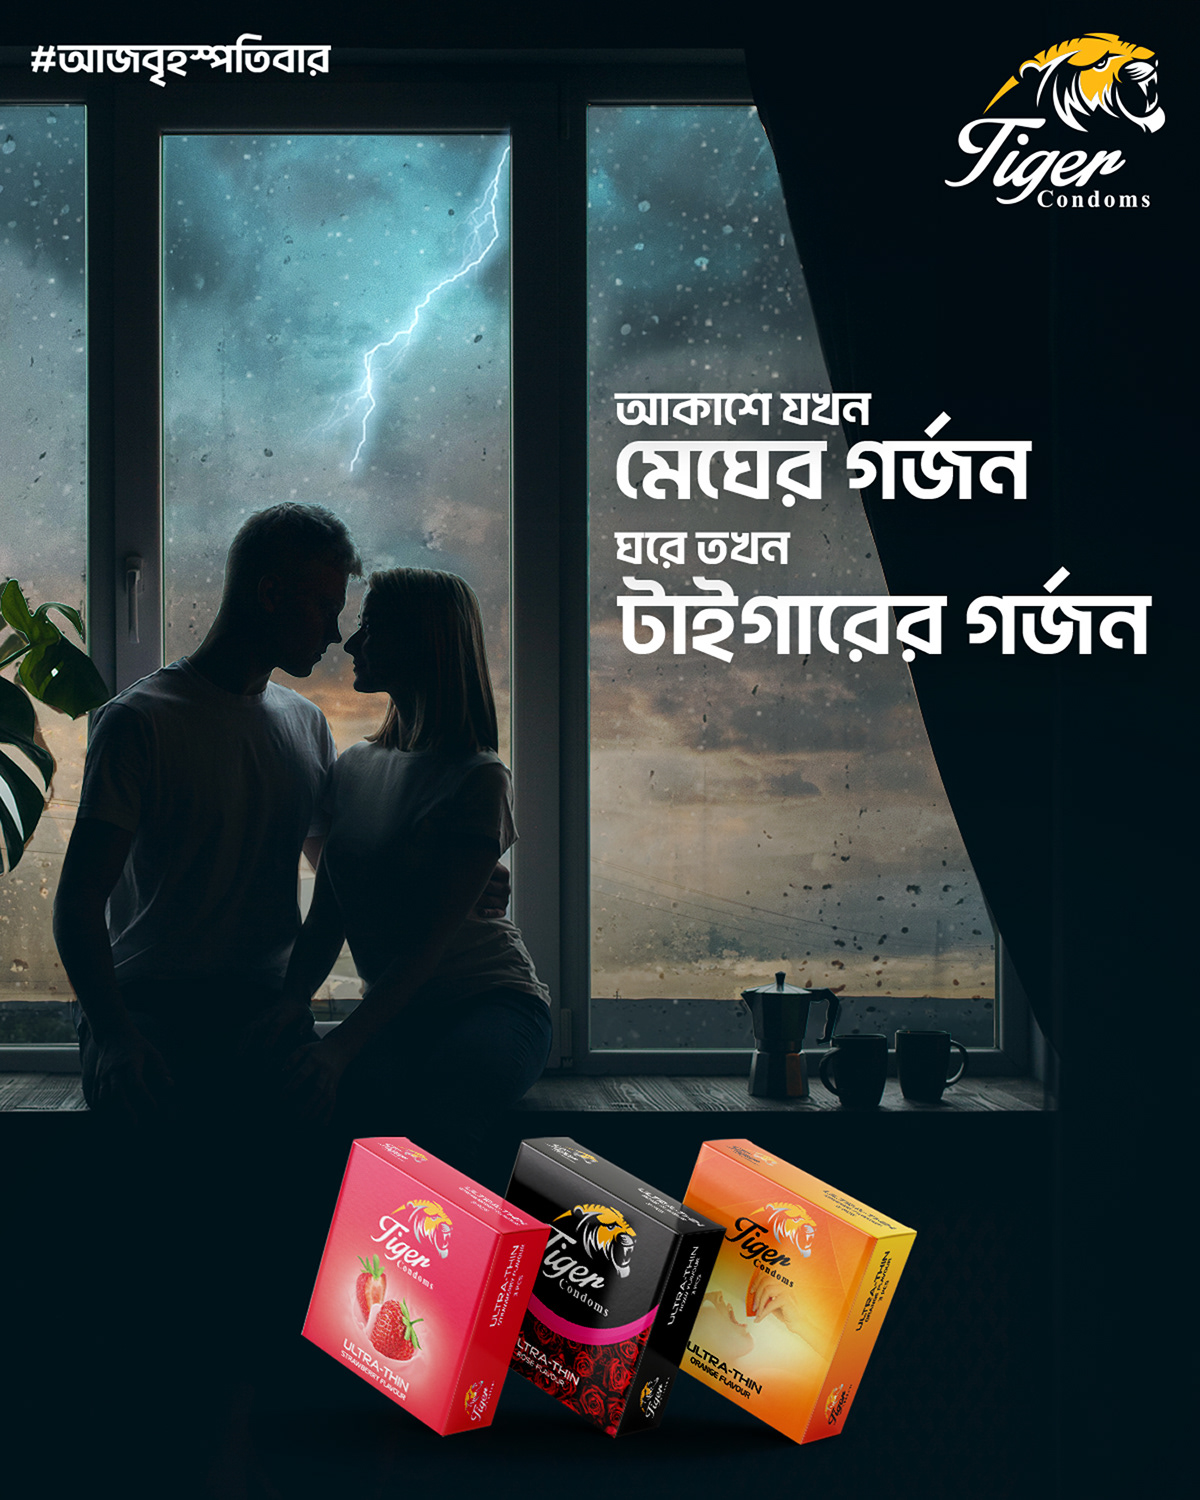 CONDOM condom ads Digital Advertising Social media post Socialmedia Advertising  RFL Bangladesh Tiger condom facebook post